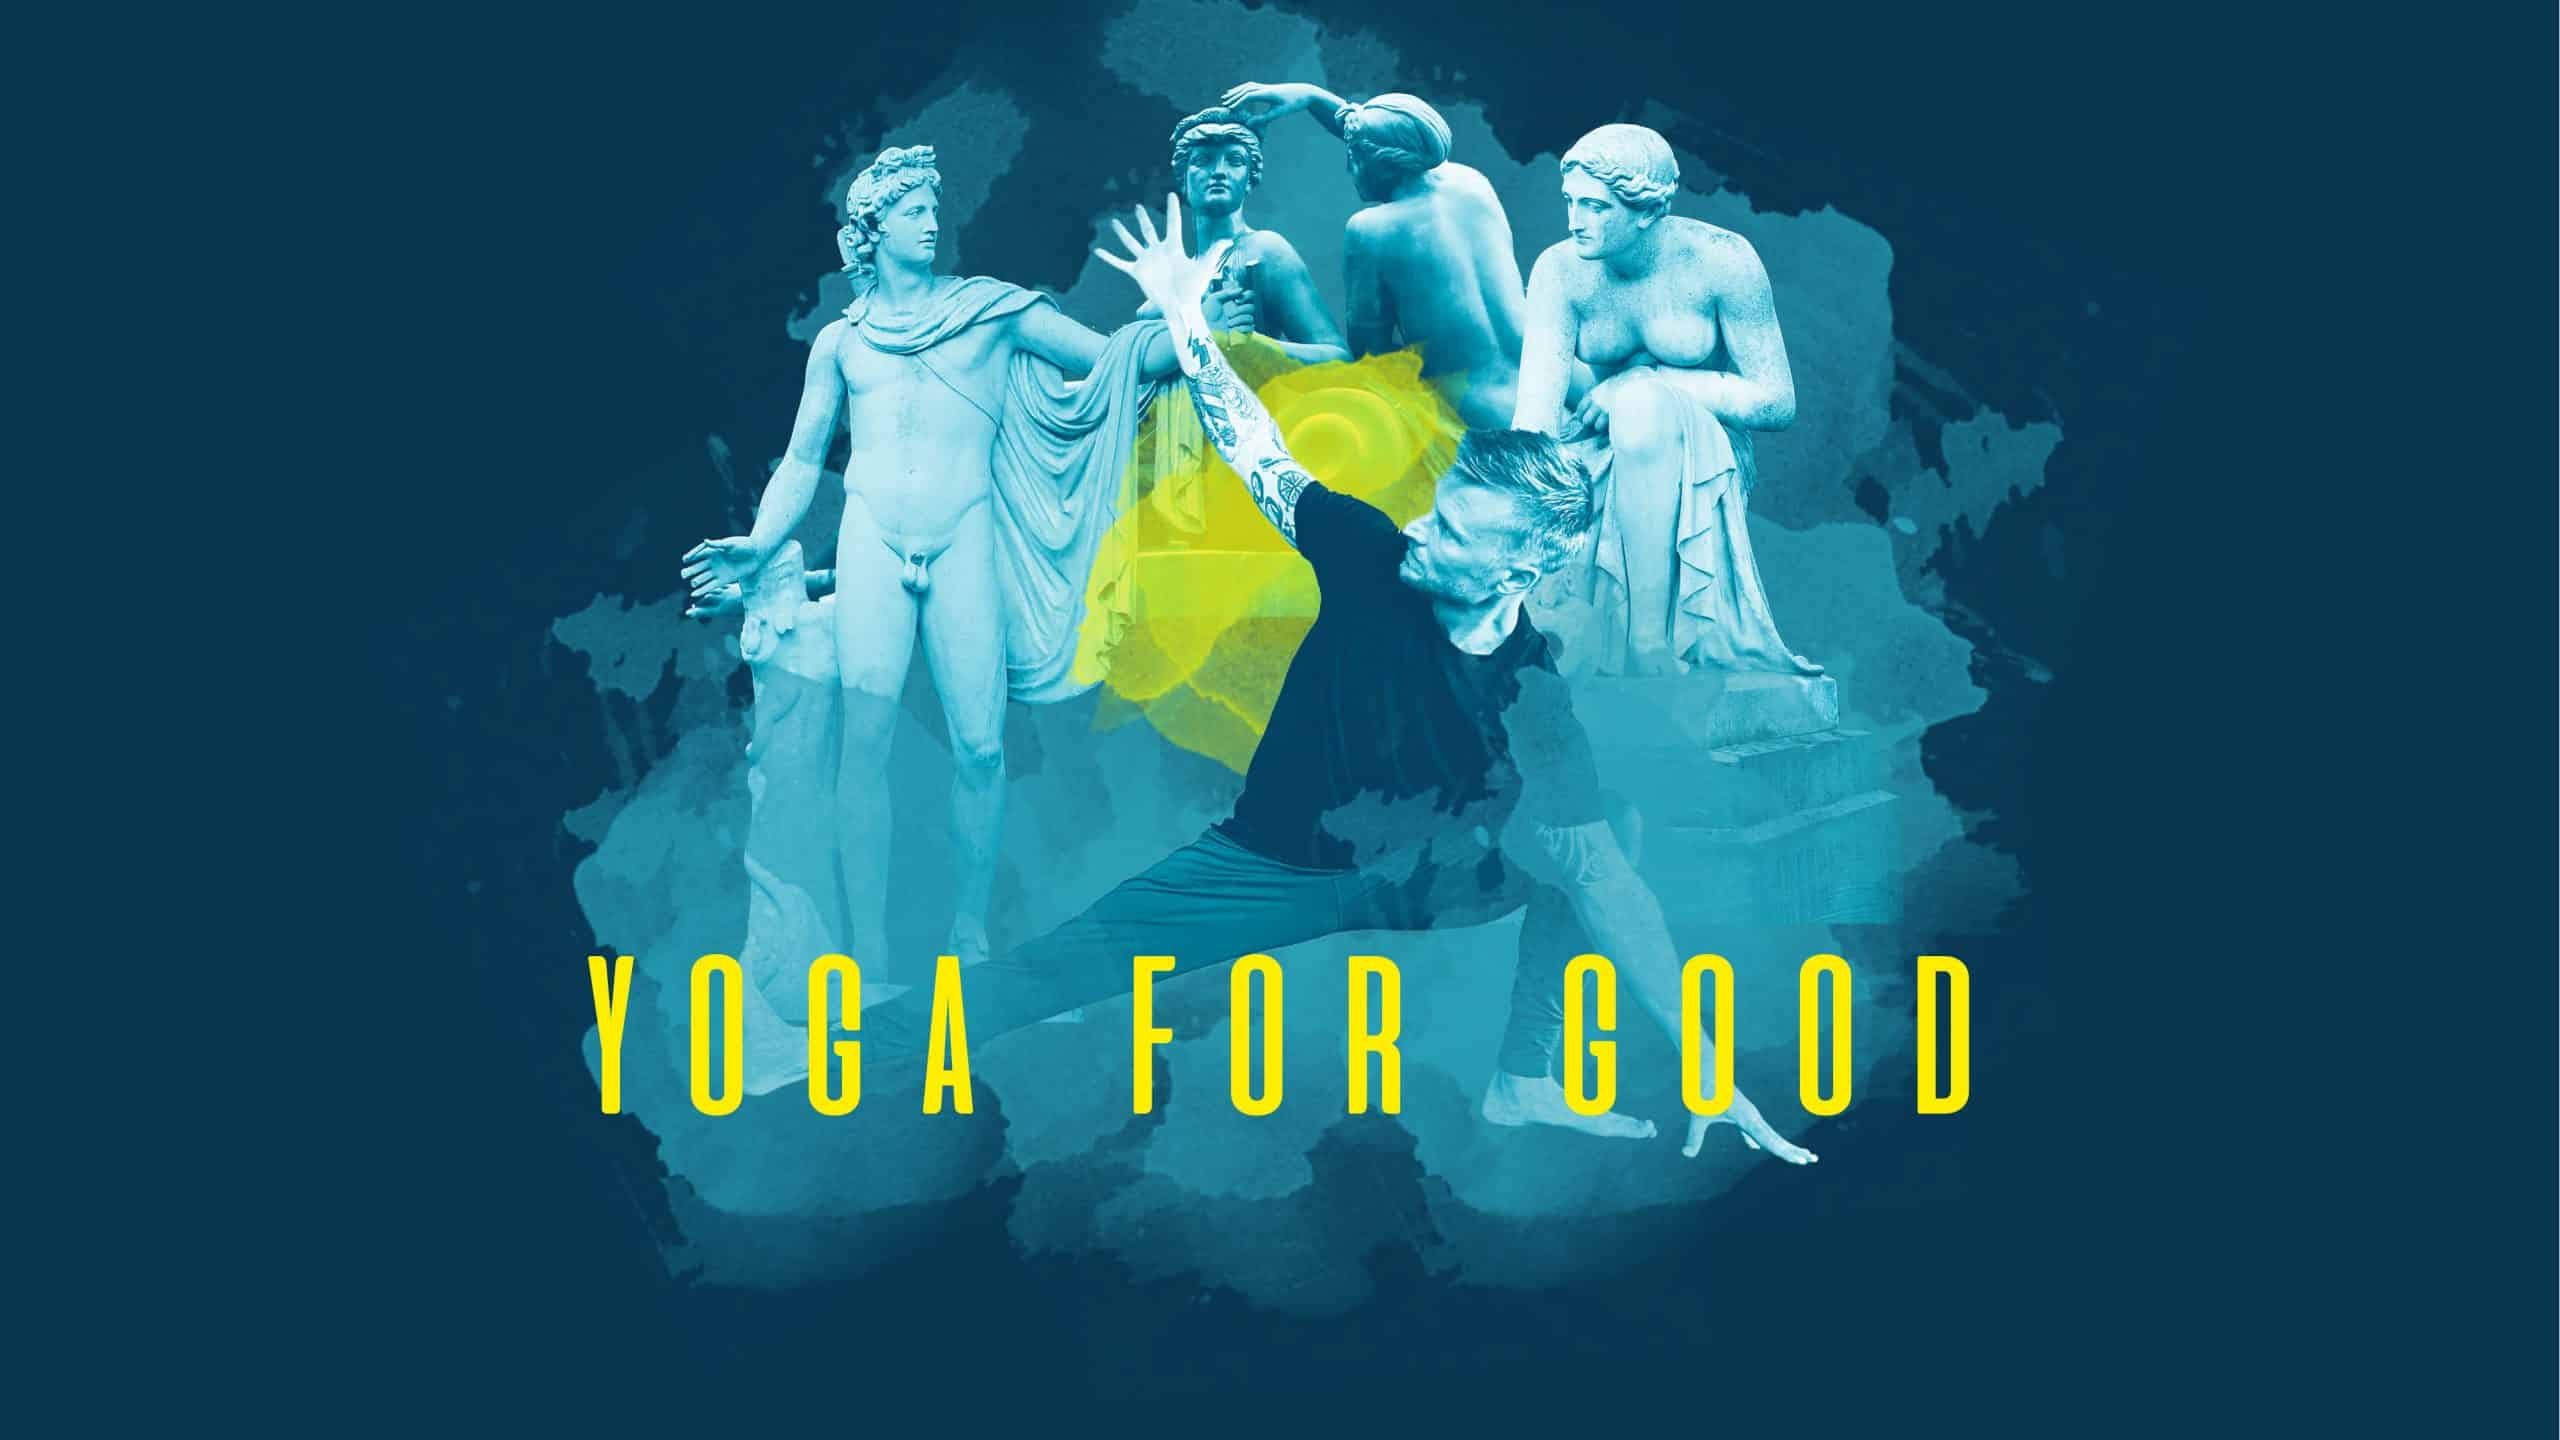 Eine Grafik mit einem Menschen der Yoga macht, im Hintergrund sind diverse Skulpturen zu sehen.